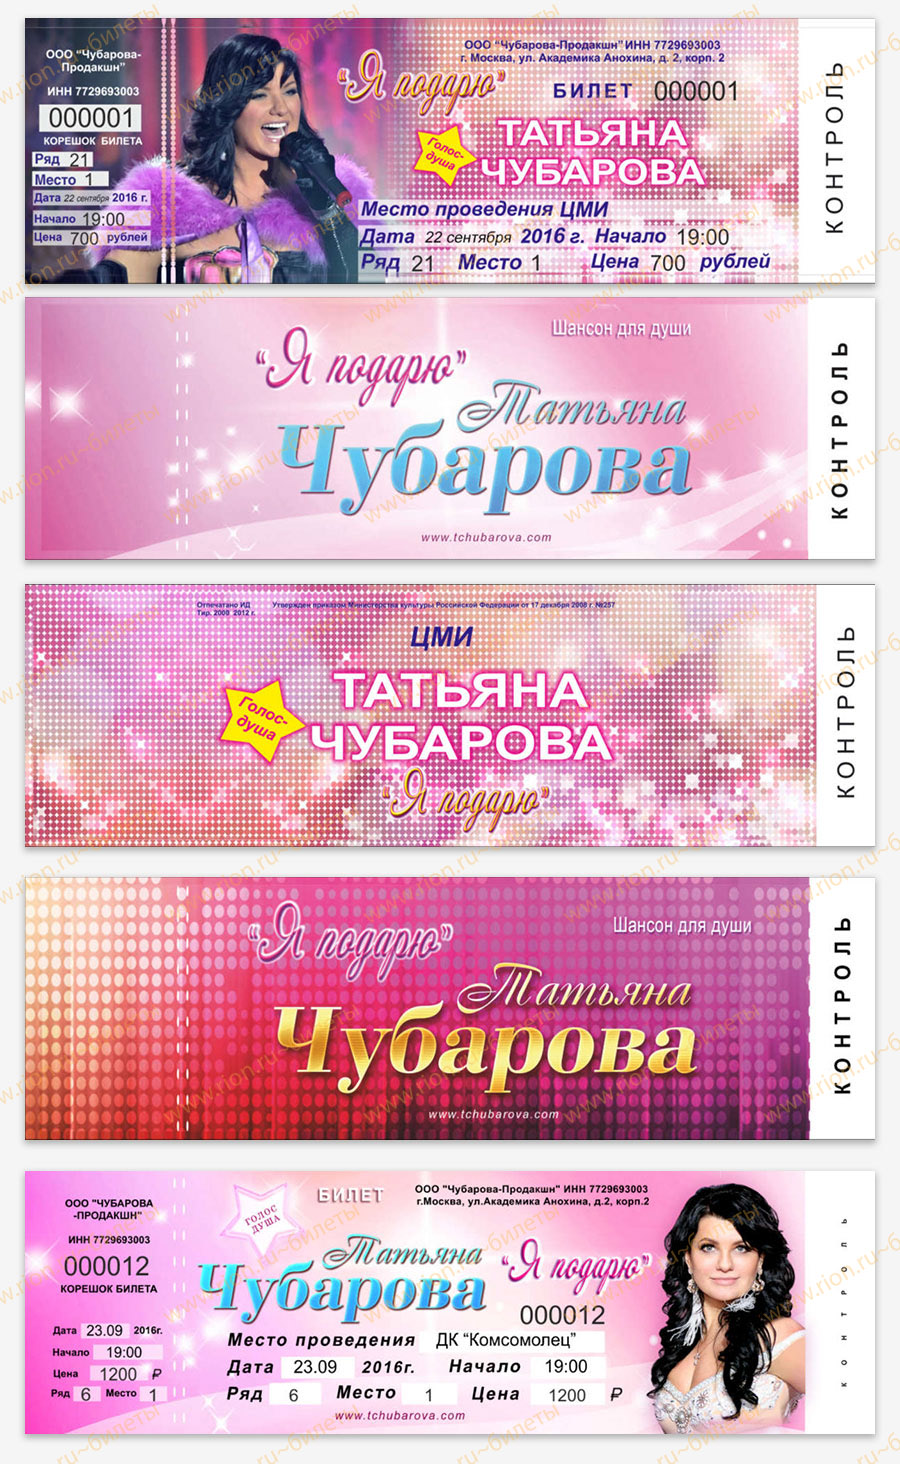 Билеты на музыкальный концерт Татьяны Чубаровой